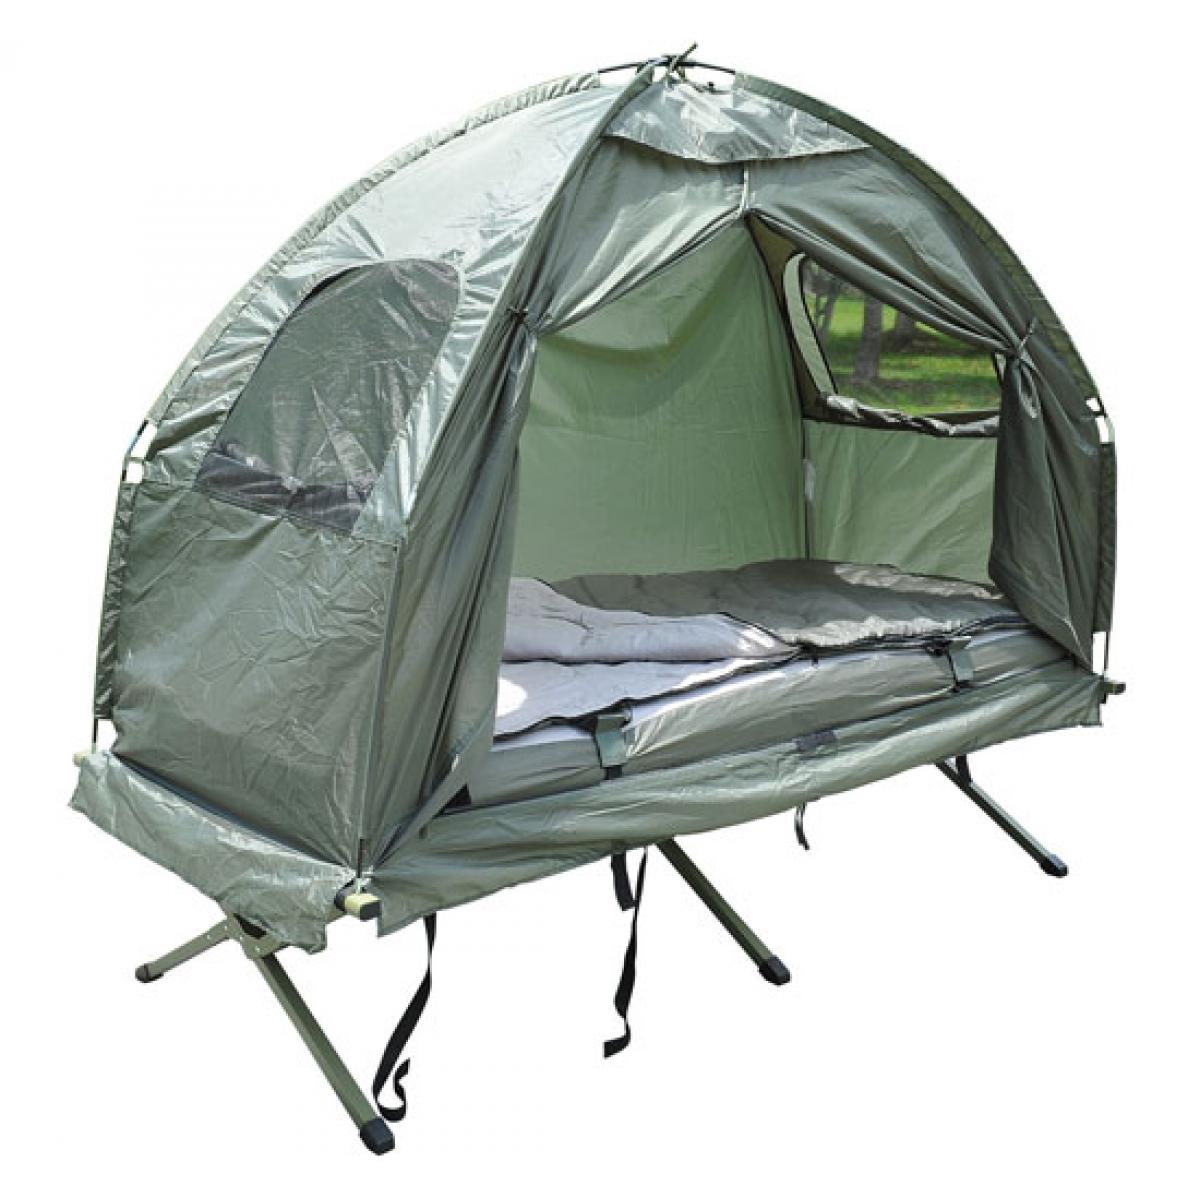 Bcelec - Lit de camp avec tente, sac de couchage et matelas gonflable - Pergolas et Tonnelles